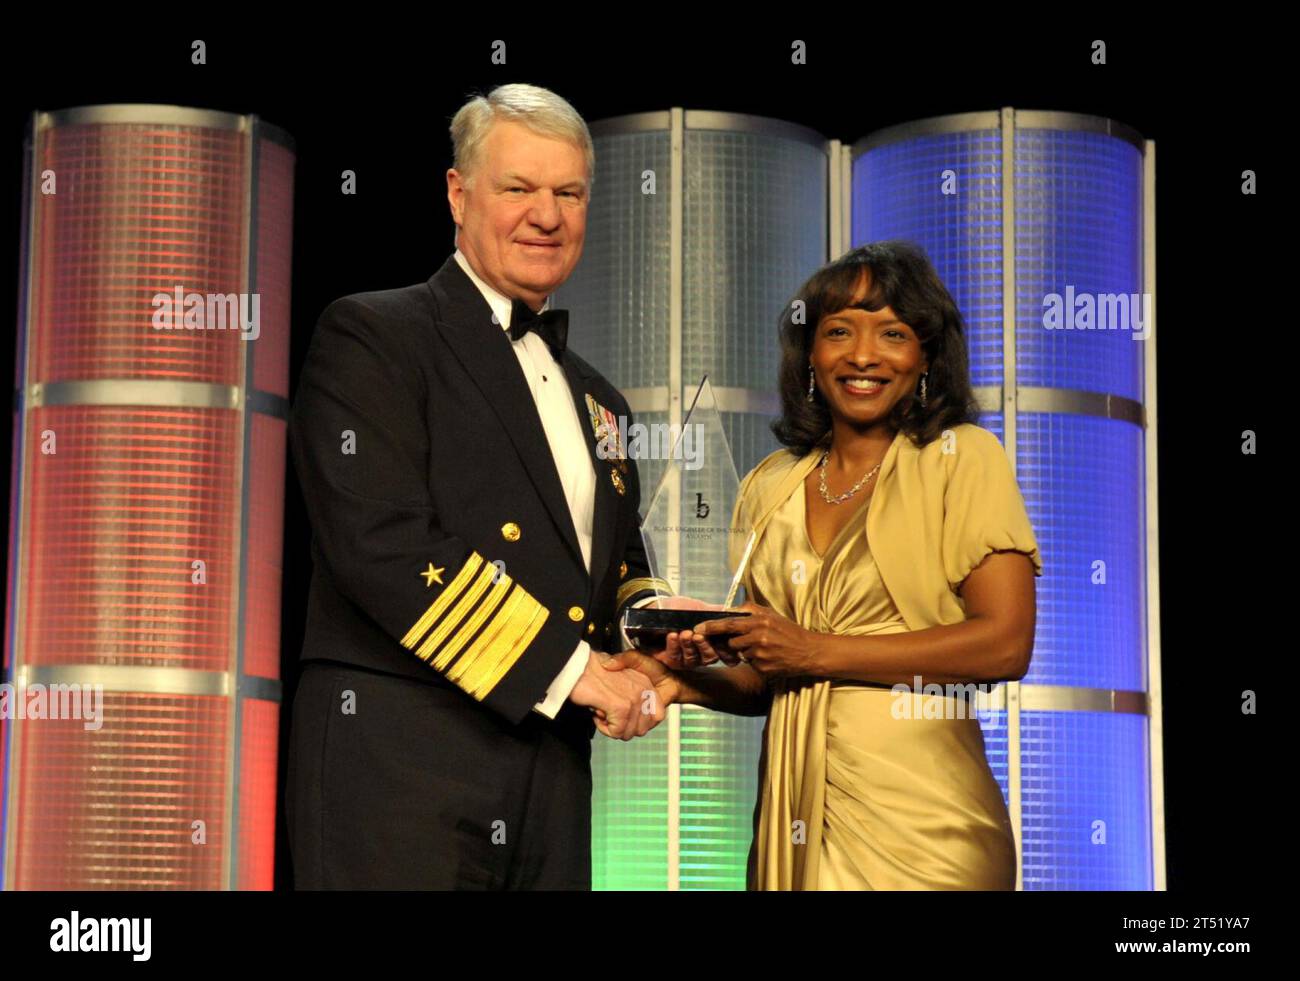 1002203548M-073 BALTIMORE (le 20 février 2010) le chef des opérations navales (CNO) l'amiral Gary Rougehead, à gauche, honore Sharon H. Smoot du prix de l'ingénieur noir de l'année pour ses réalisations professionnelles dans le gouvernement lors du 24e gala de l'ingénieur noir de l'année à Baltimore, Maryland Marine Banque D'Images